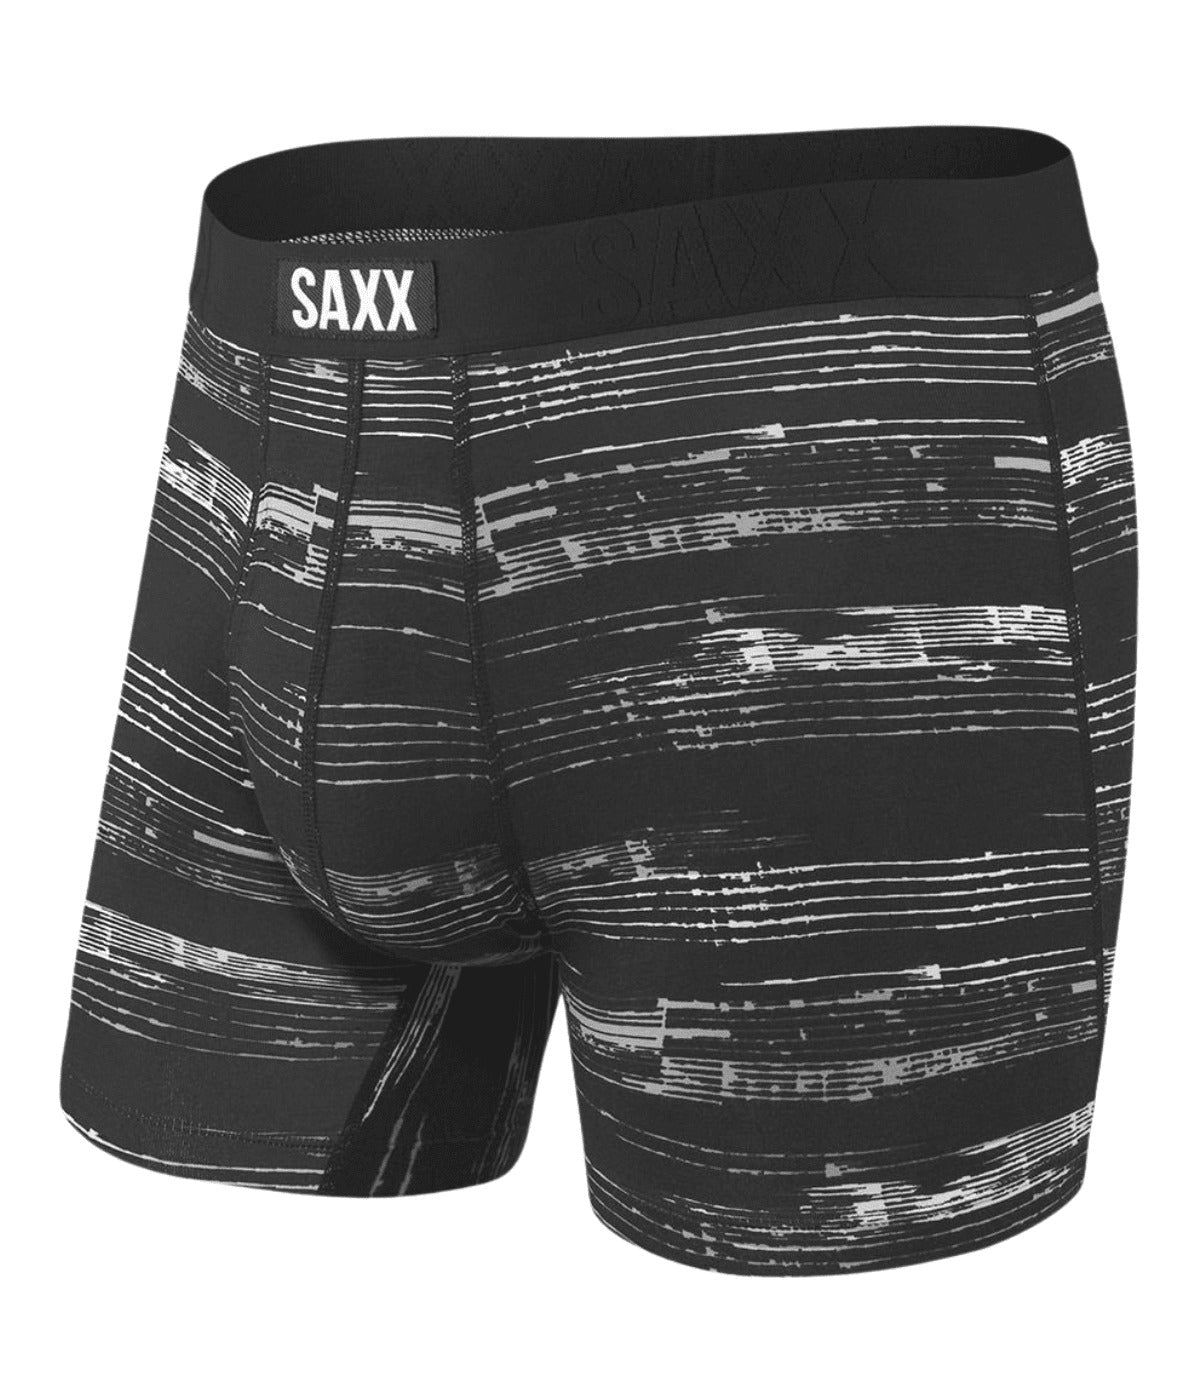 Saxx Undercover Cotton Boxer Brief